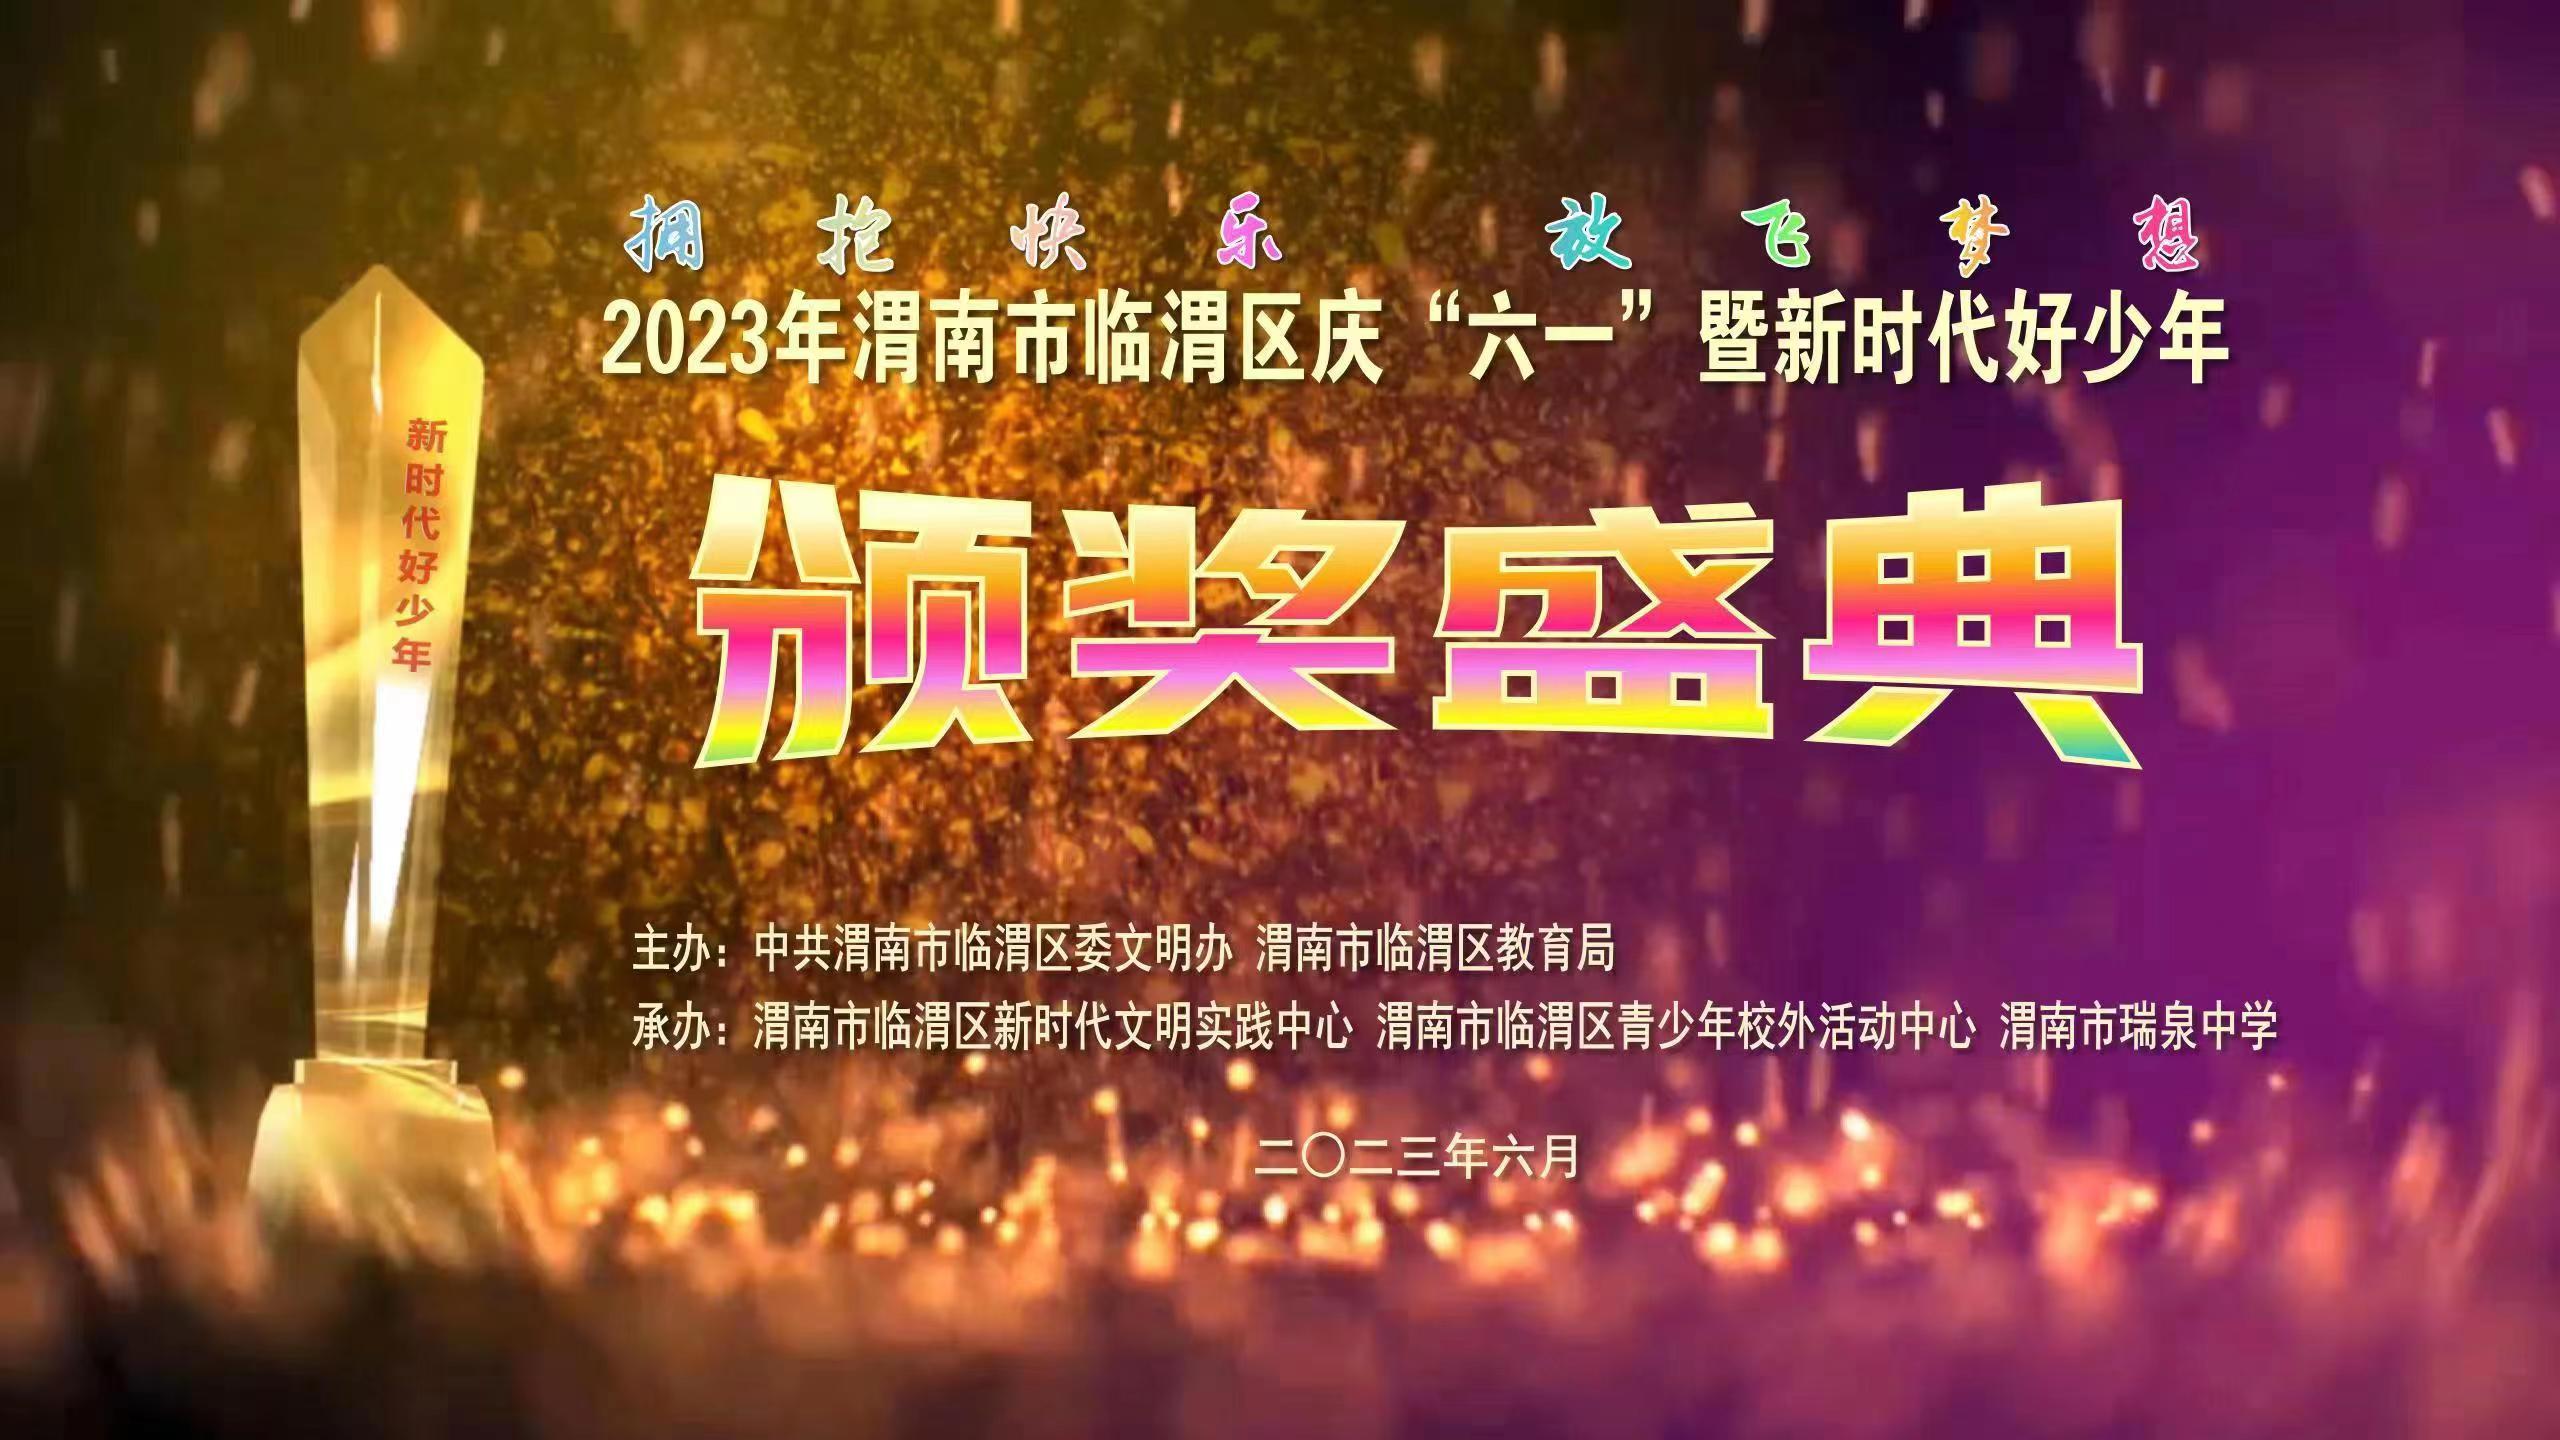  2023年渭南市临渭区庆“六一”暨新时代好少年颁奖盛典